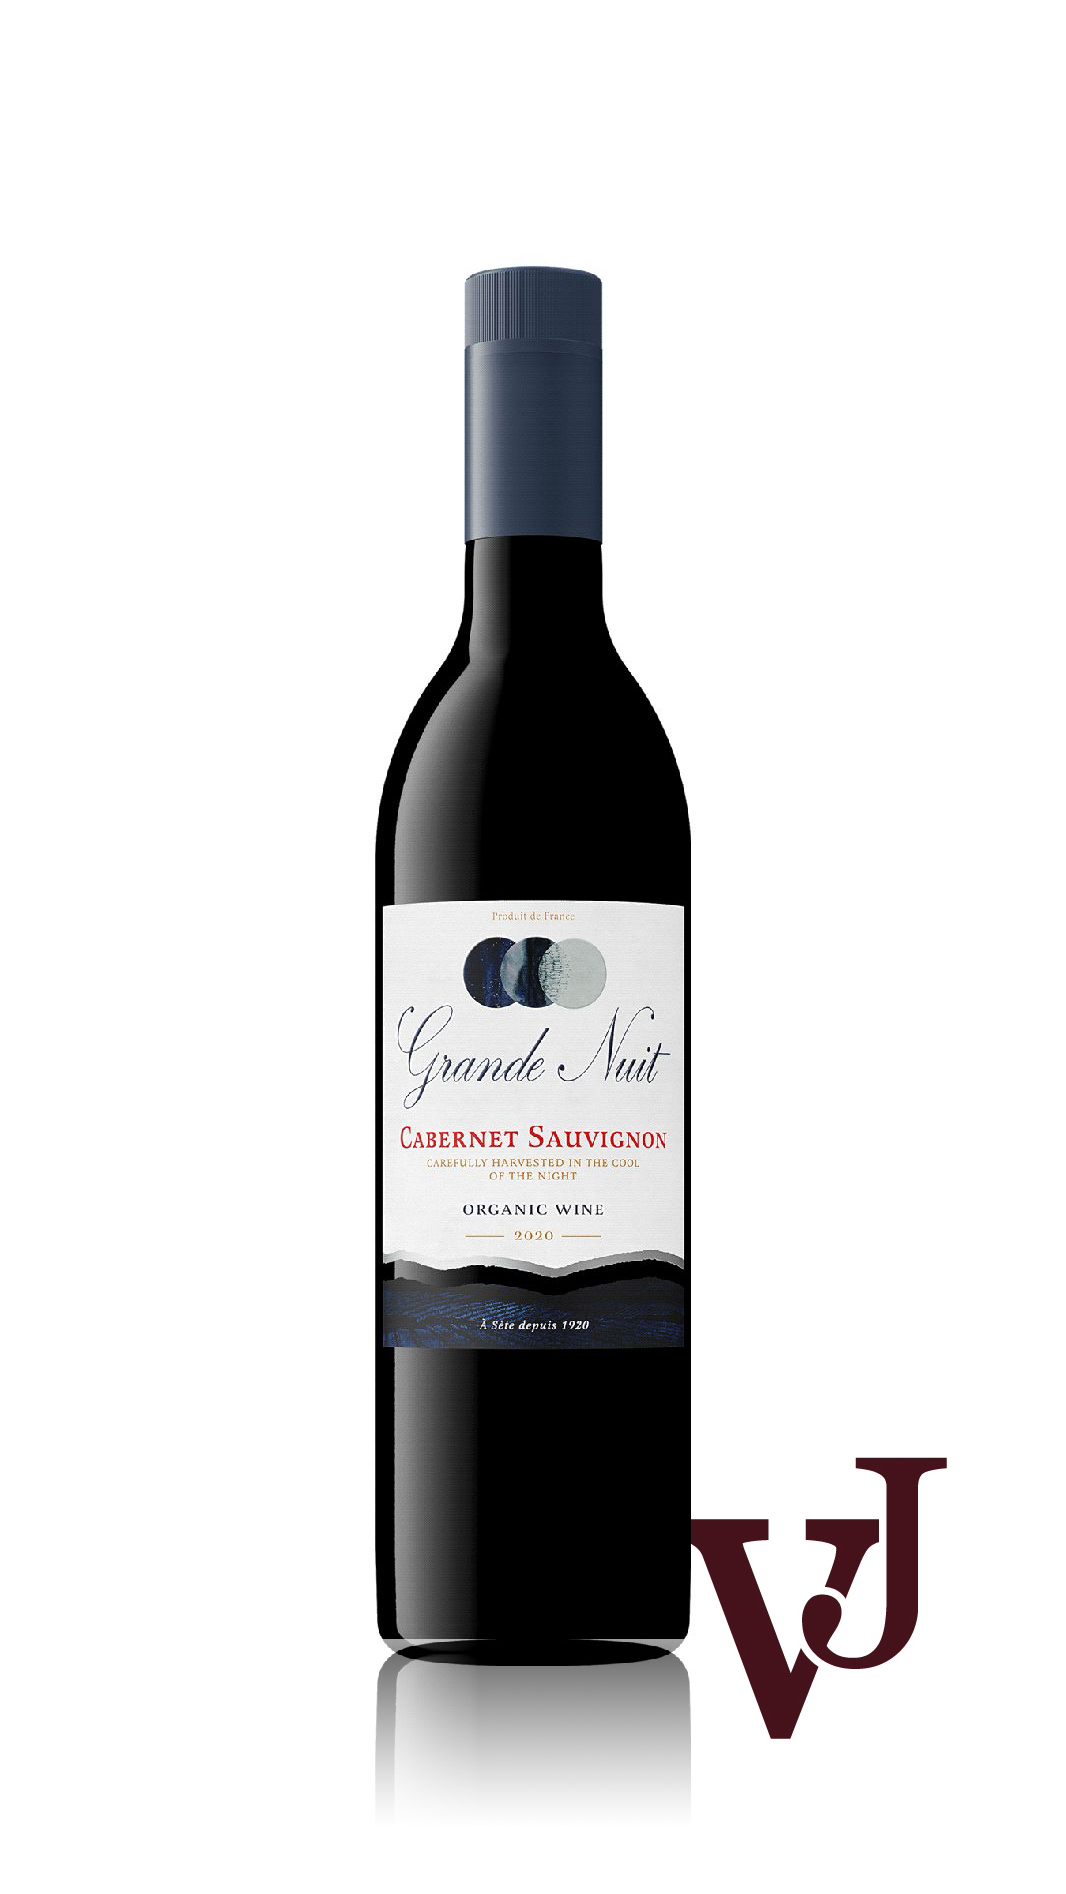 Rött Vin - Grande Nuit artikel nummer 259201 från producenten Maison Fortant från området Frankrike